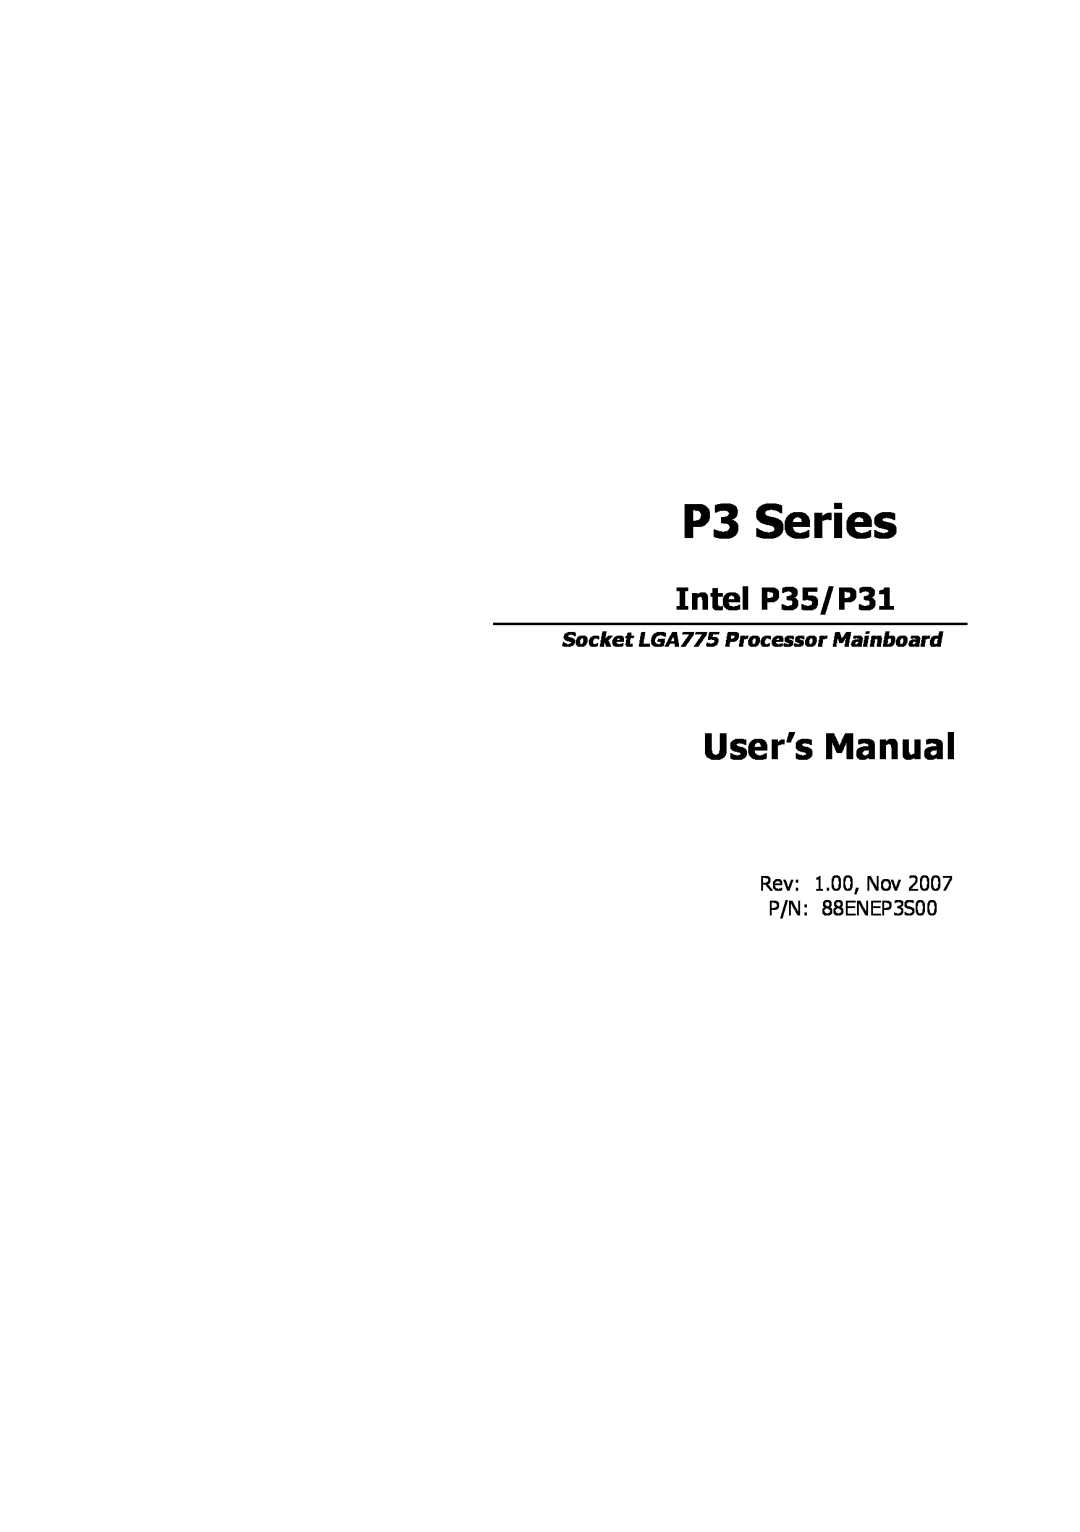 Intel Intel P35/P31 Socket LGA775 Processor Mainboard, 88ENEP3S00 user manual P3 Series, User’s Manual 